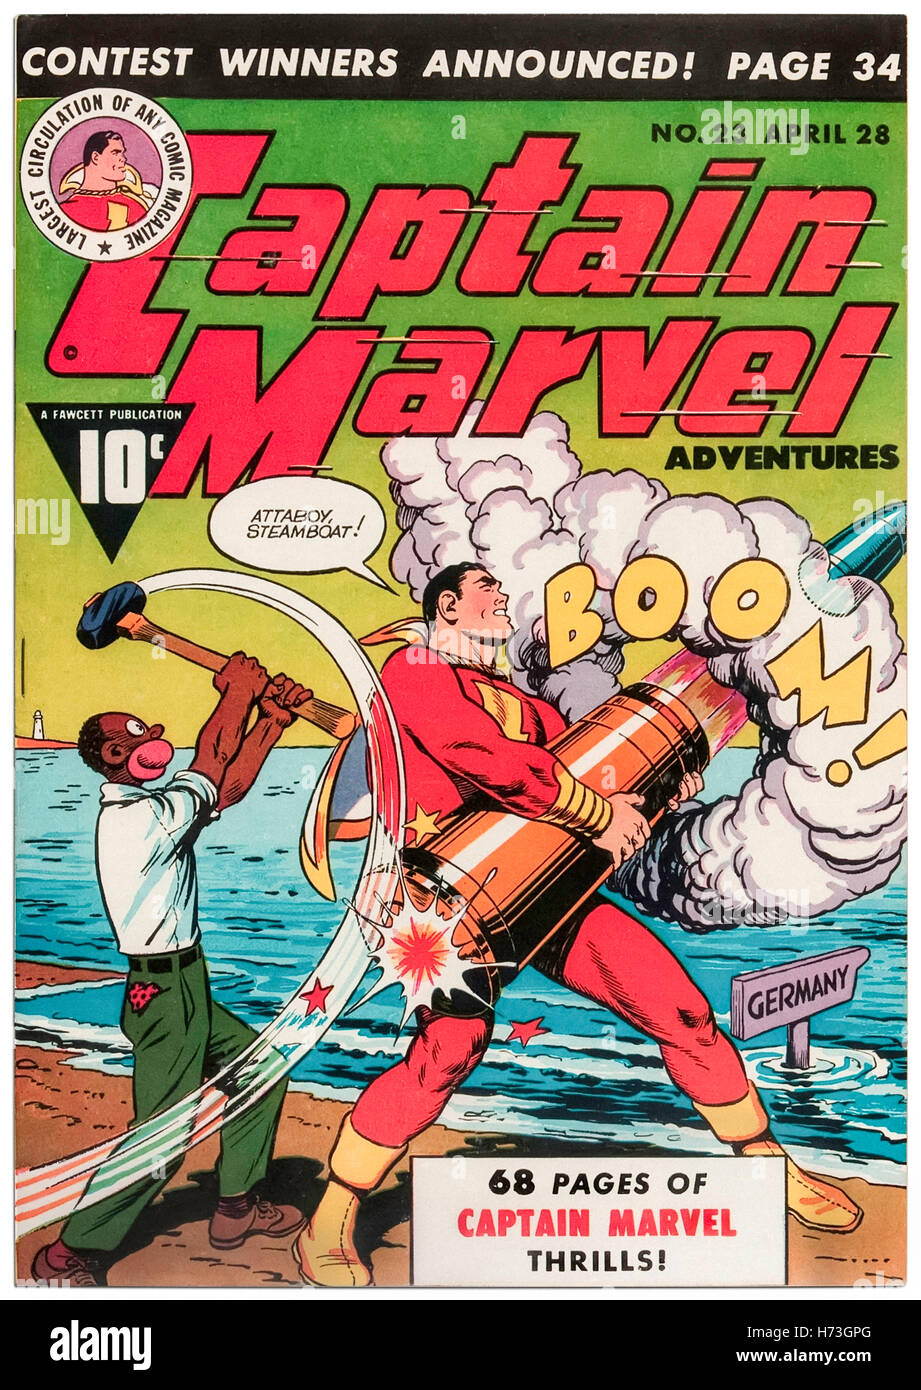 Captain Marvel Adventures Ausgabe veröffentlicht 23. April 1943, mit Cover-Art von C. C. Beck (1910-1989) von Fawcett Comics mit "Dampfer" eine rassistische Stereotyp der Afroamerikaner. Die Verlage, die Leitlinien im Jahr 1942, beleidigende oder subversiven Inhalte zu beseitigen; Dampfschiff wurde 1945 eingestellt. Stockfoto